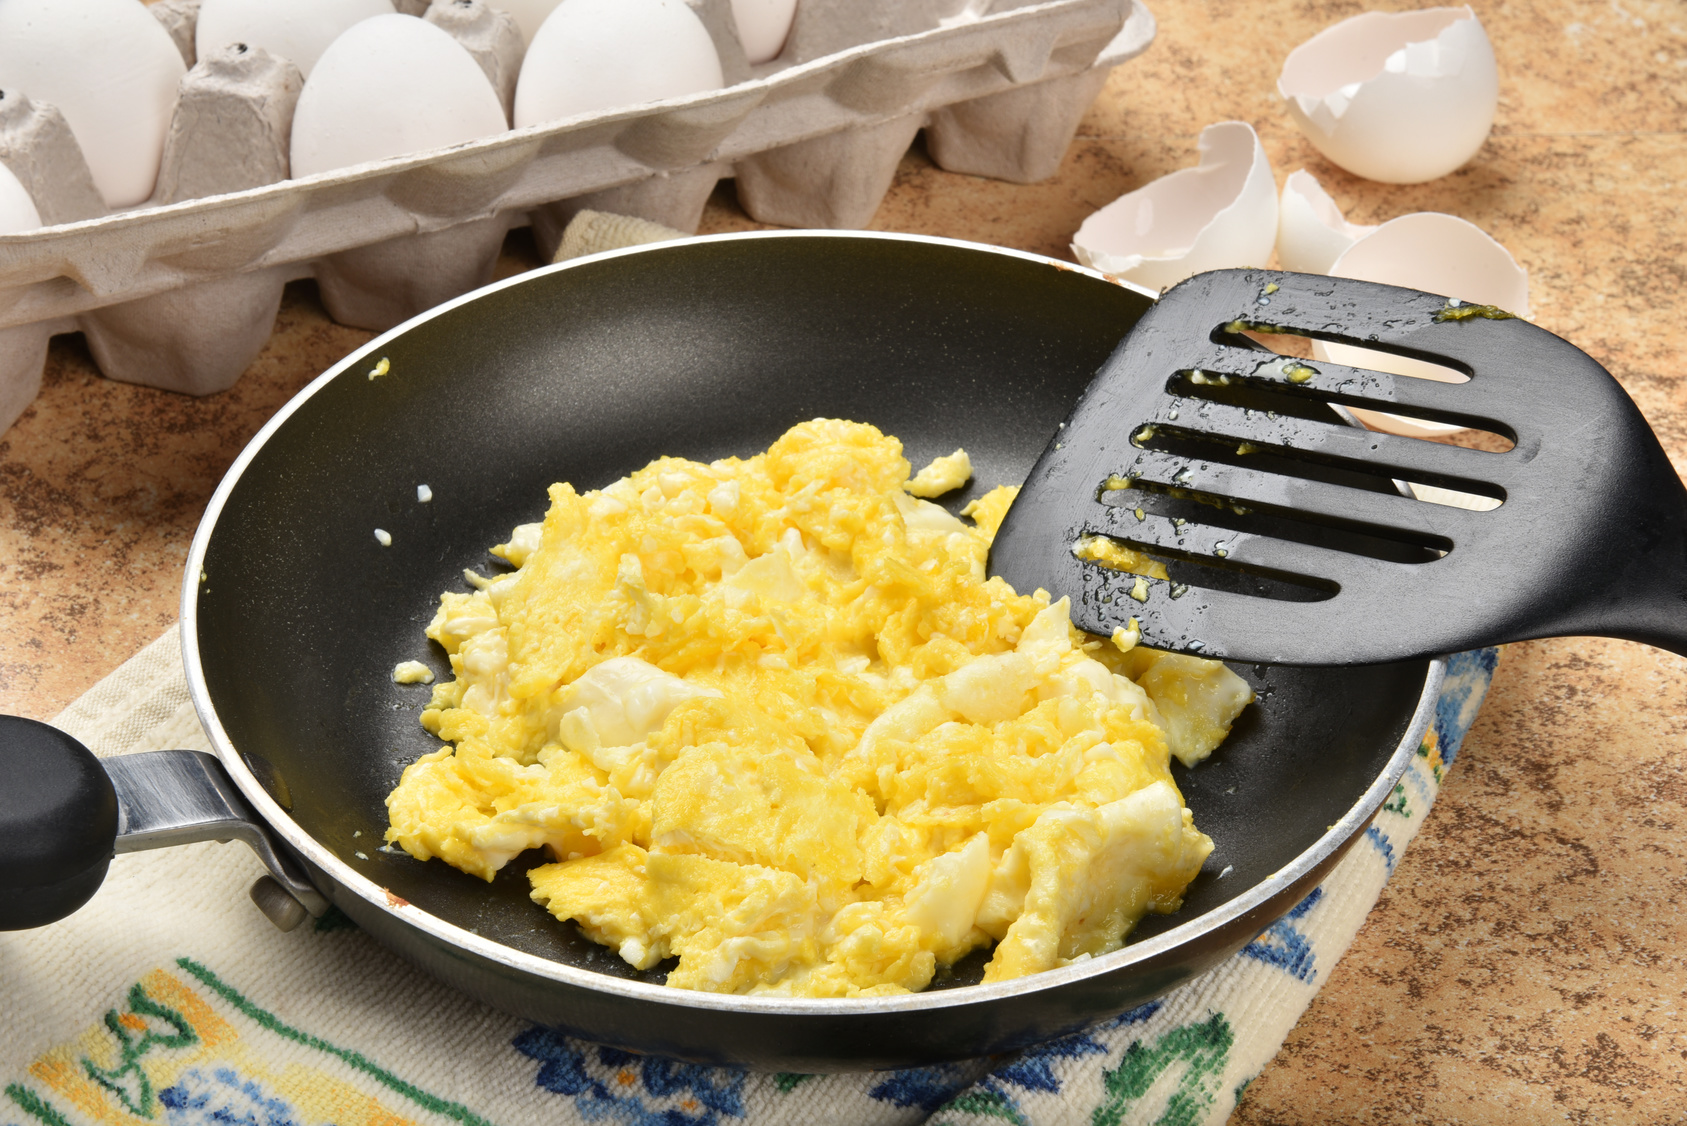 Uova strapazzate in padella antiaderente con paletta accanto a cartone delle uova